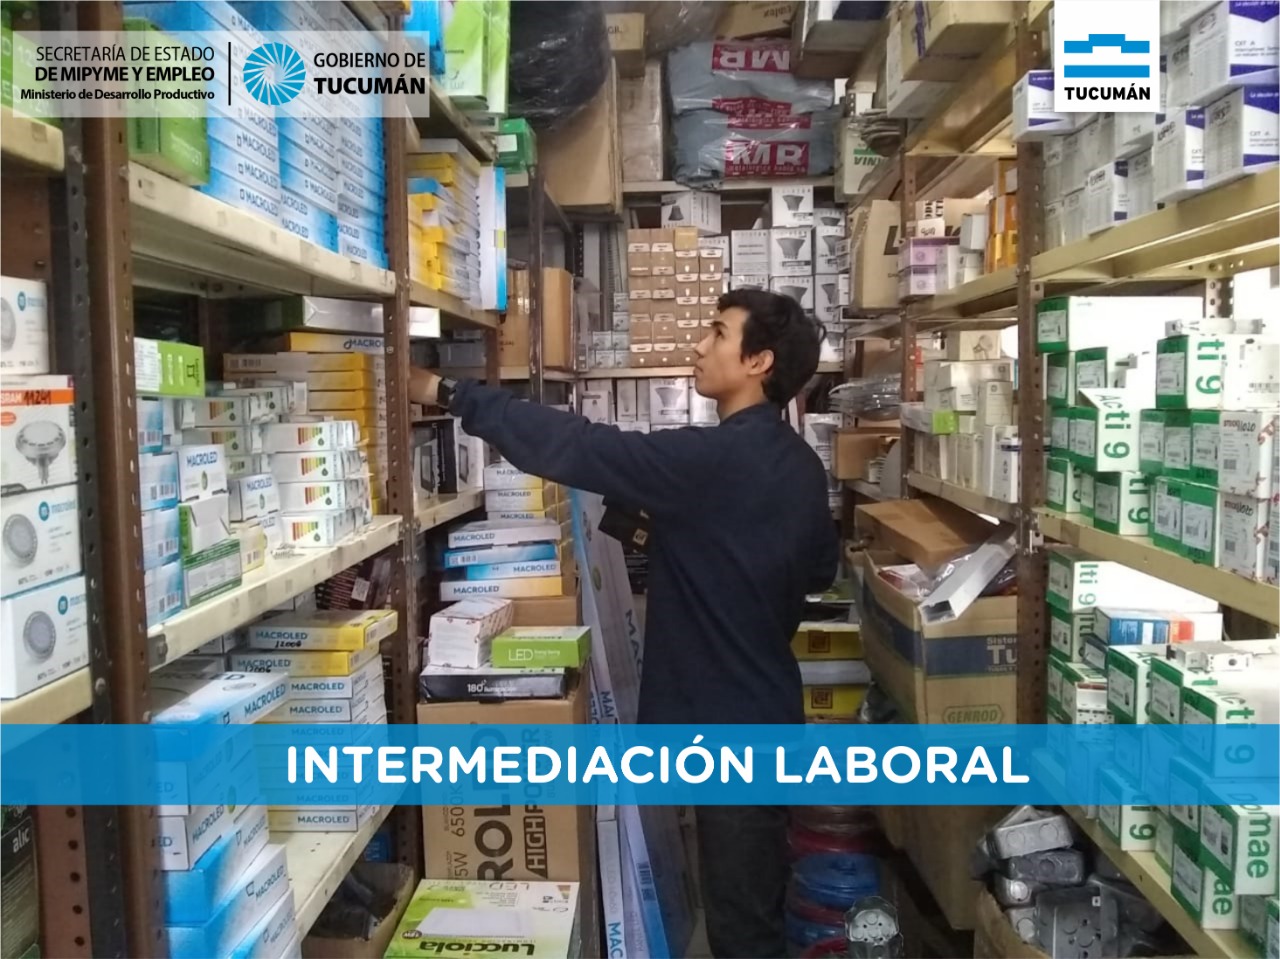 Intermediación laboral, la herramienta más utilizada por empresas tucumanas